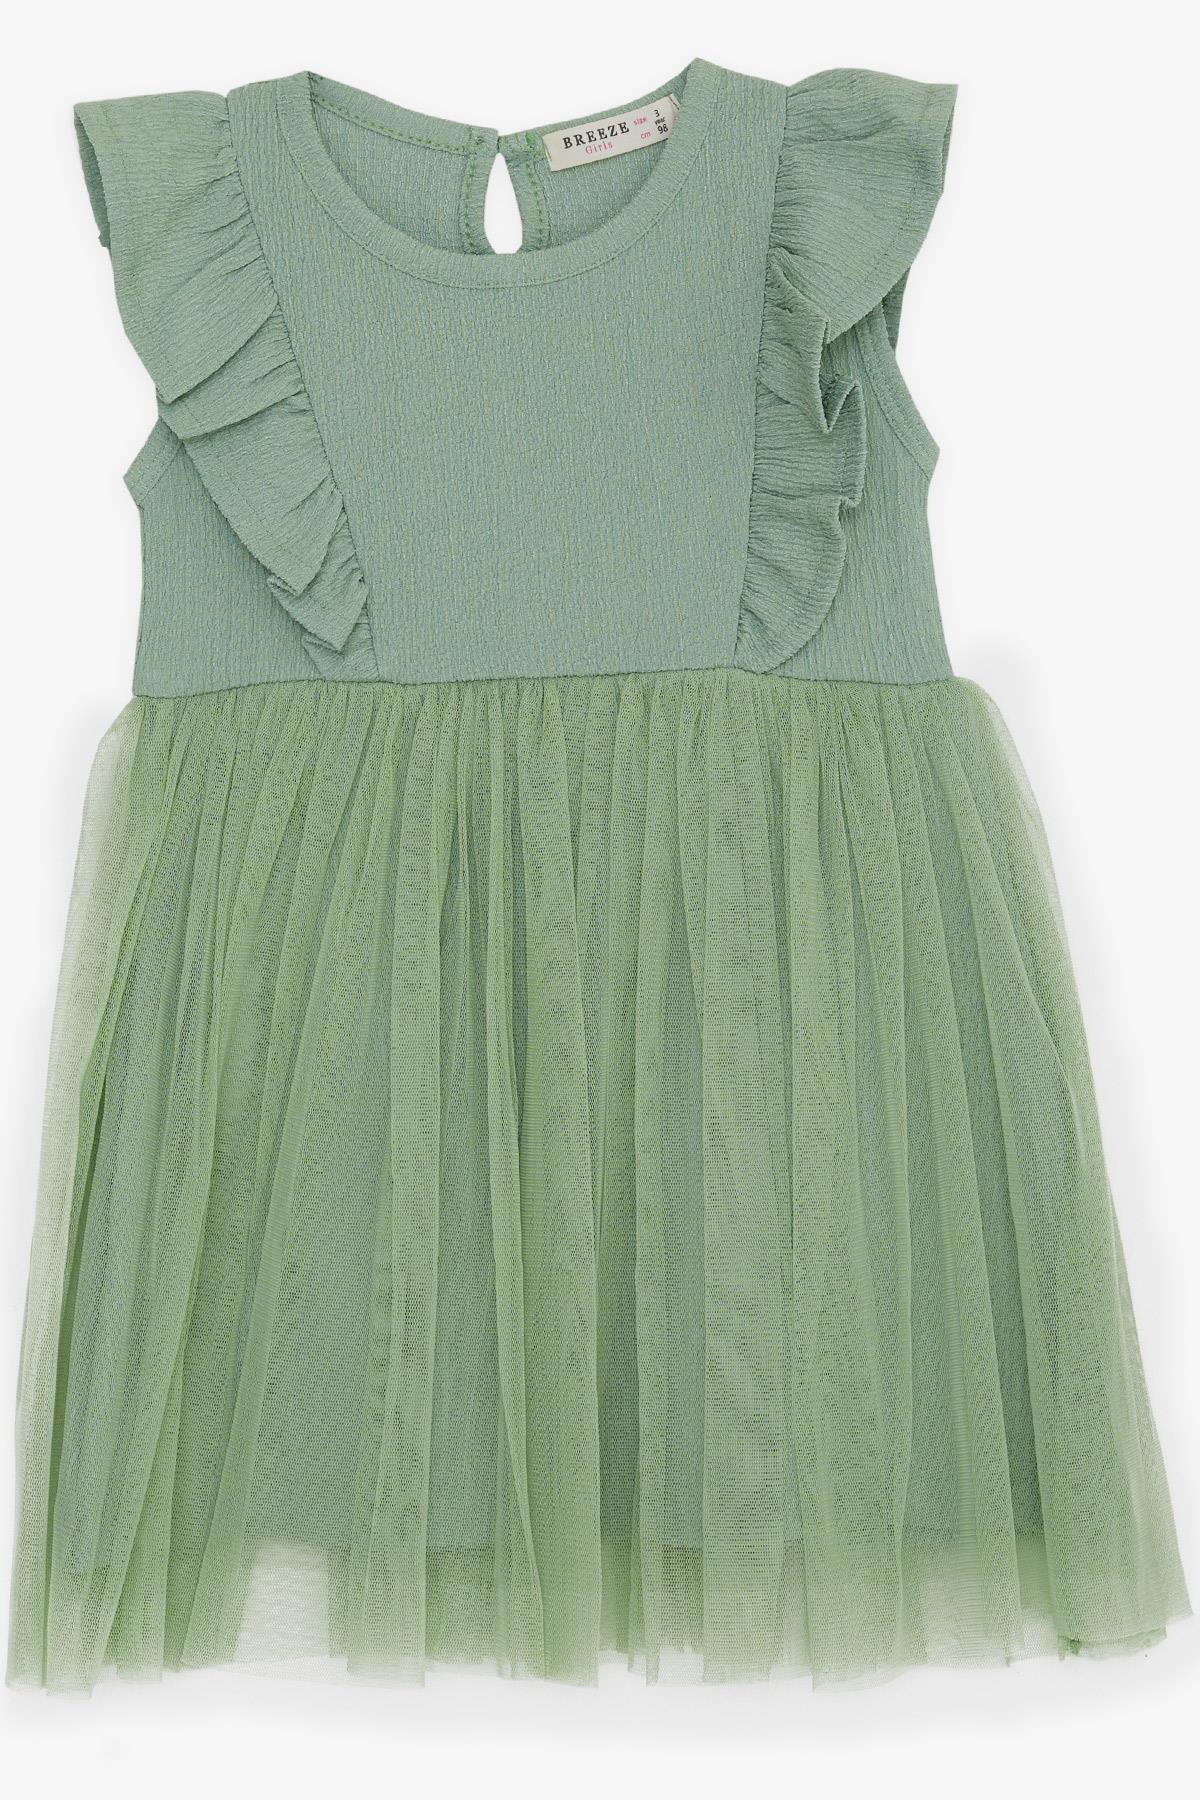 Kız Çocuk Elbise Tüllü Fırfırlı Mint Yeşili 3-8 Yaş - Yazlık Elbiseler |  Breeze